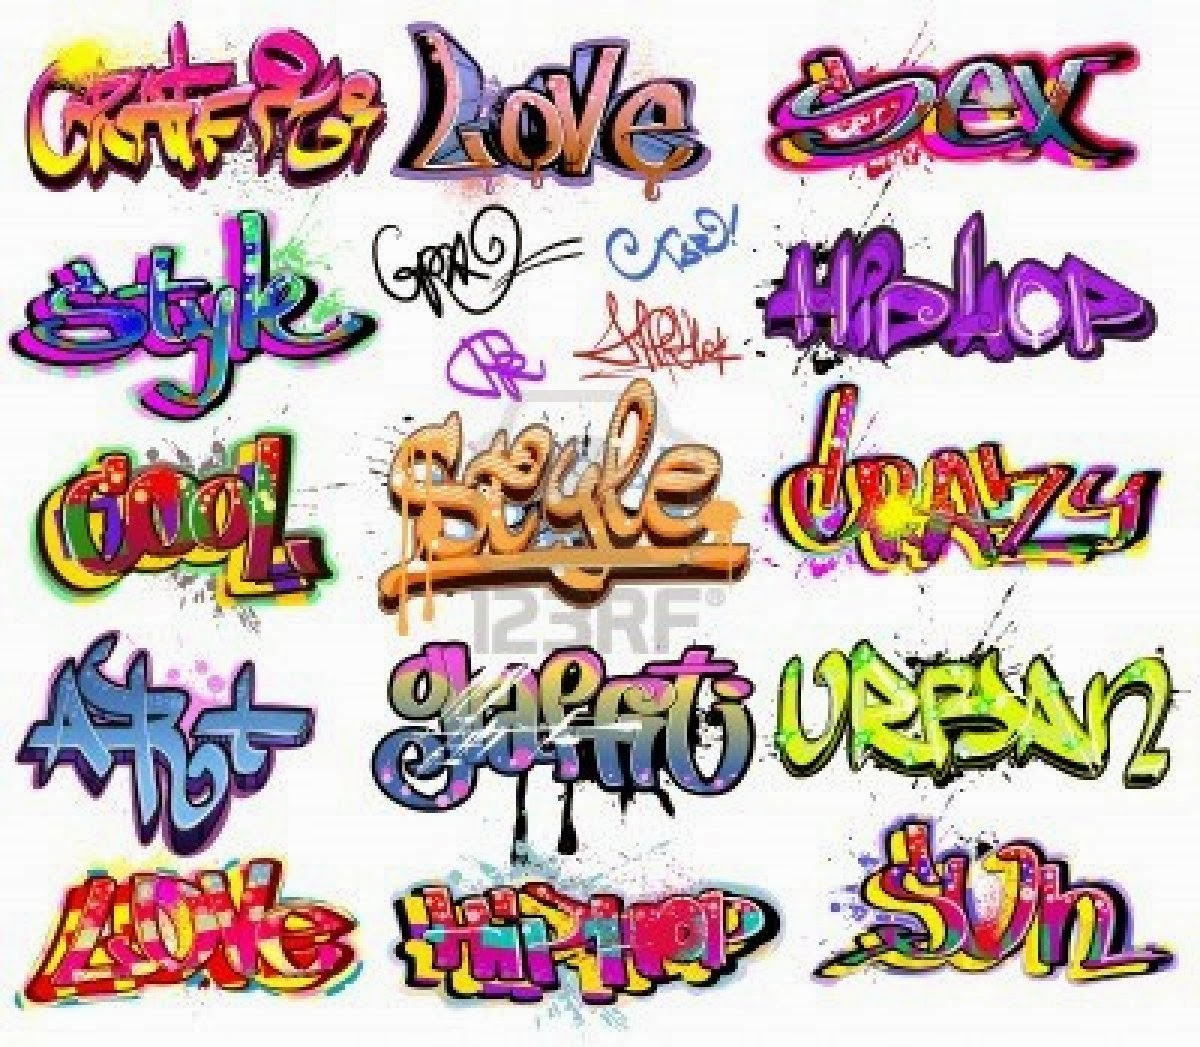 Graffiti Wall Graffiti words cool 1200x1047